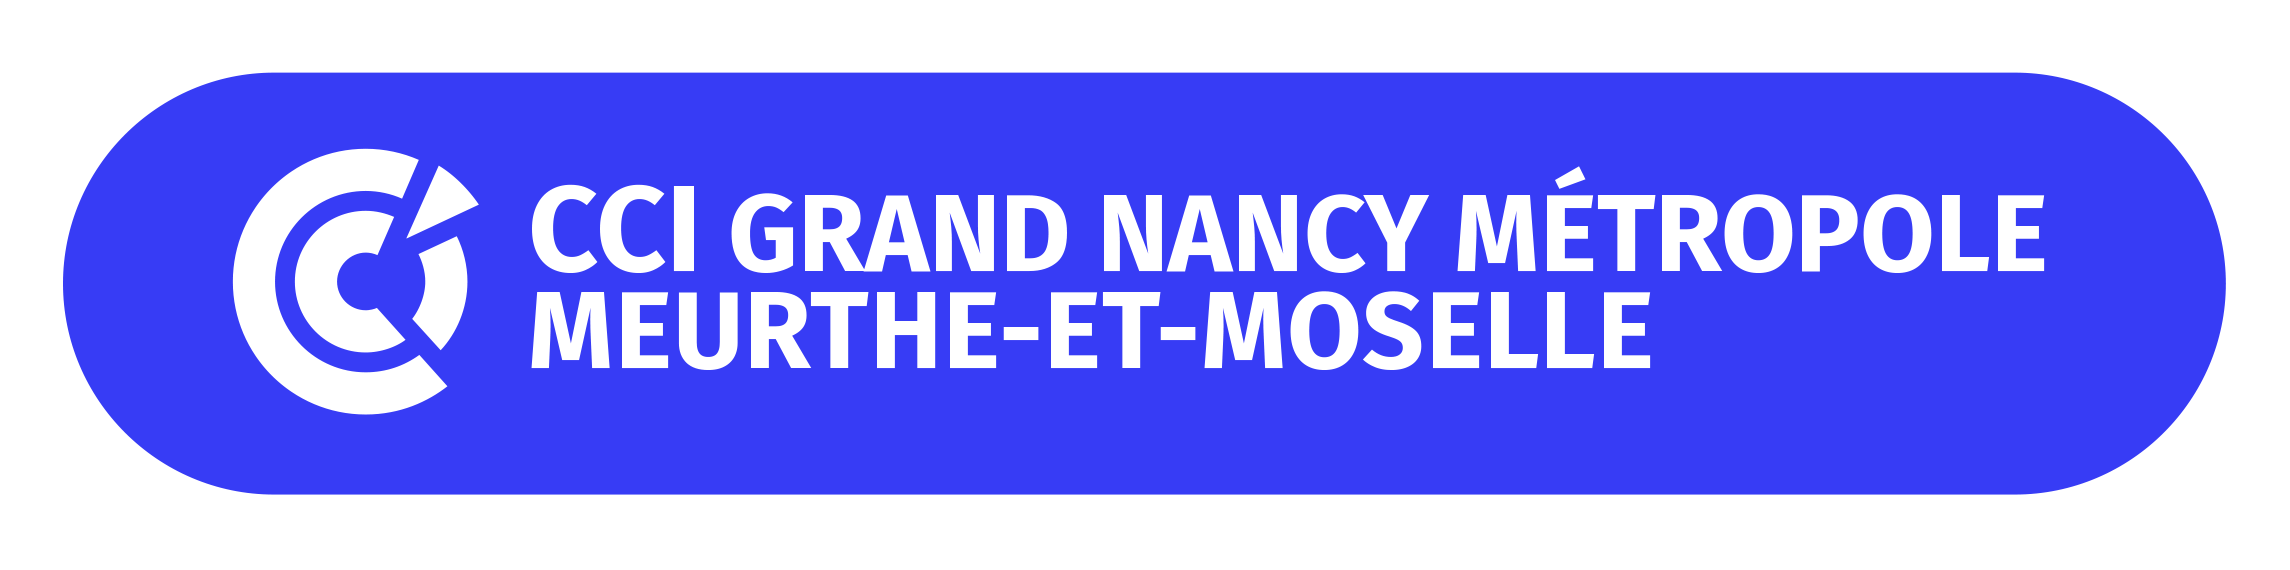 Logo : CCI GRAND NANCY MÉTROPOLE  MEURTHE-ET-MOSELLE